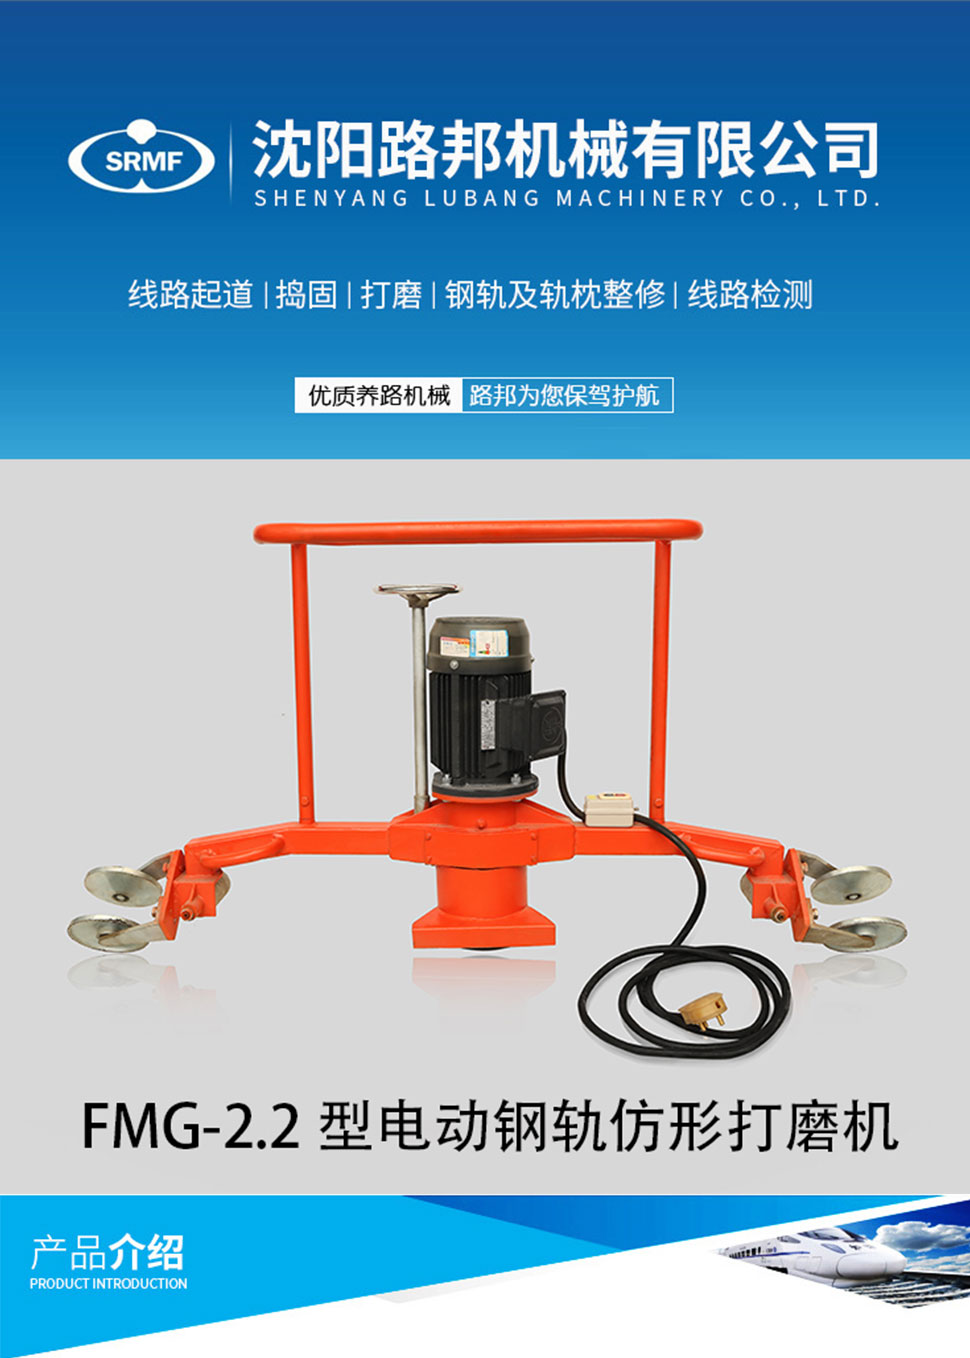 FMG-2.2型电动钢轨仿形打磨机